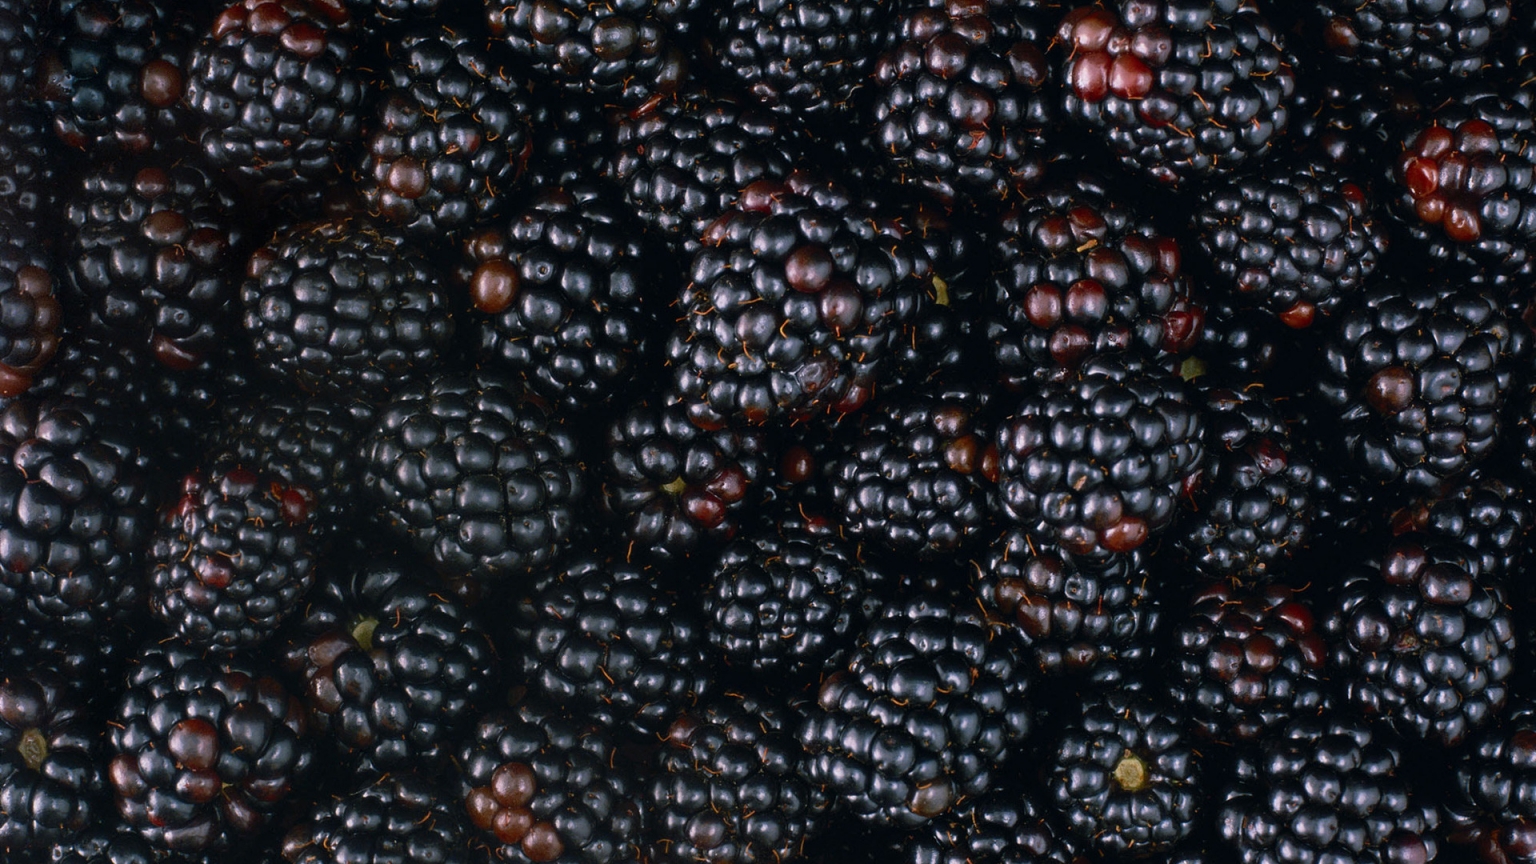 Tasty Blackberries for 1536 x 864 HDTV resolution